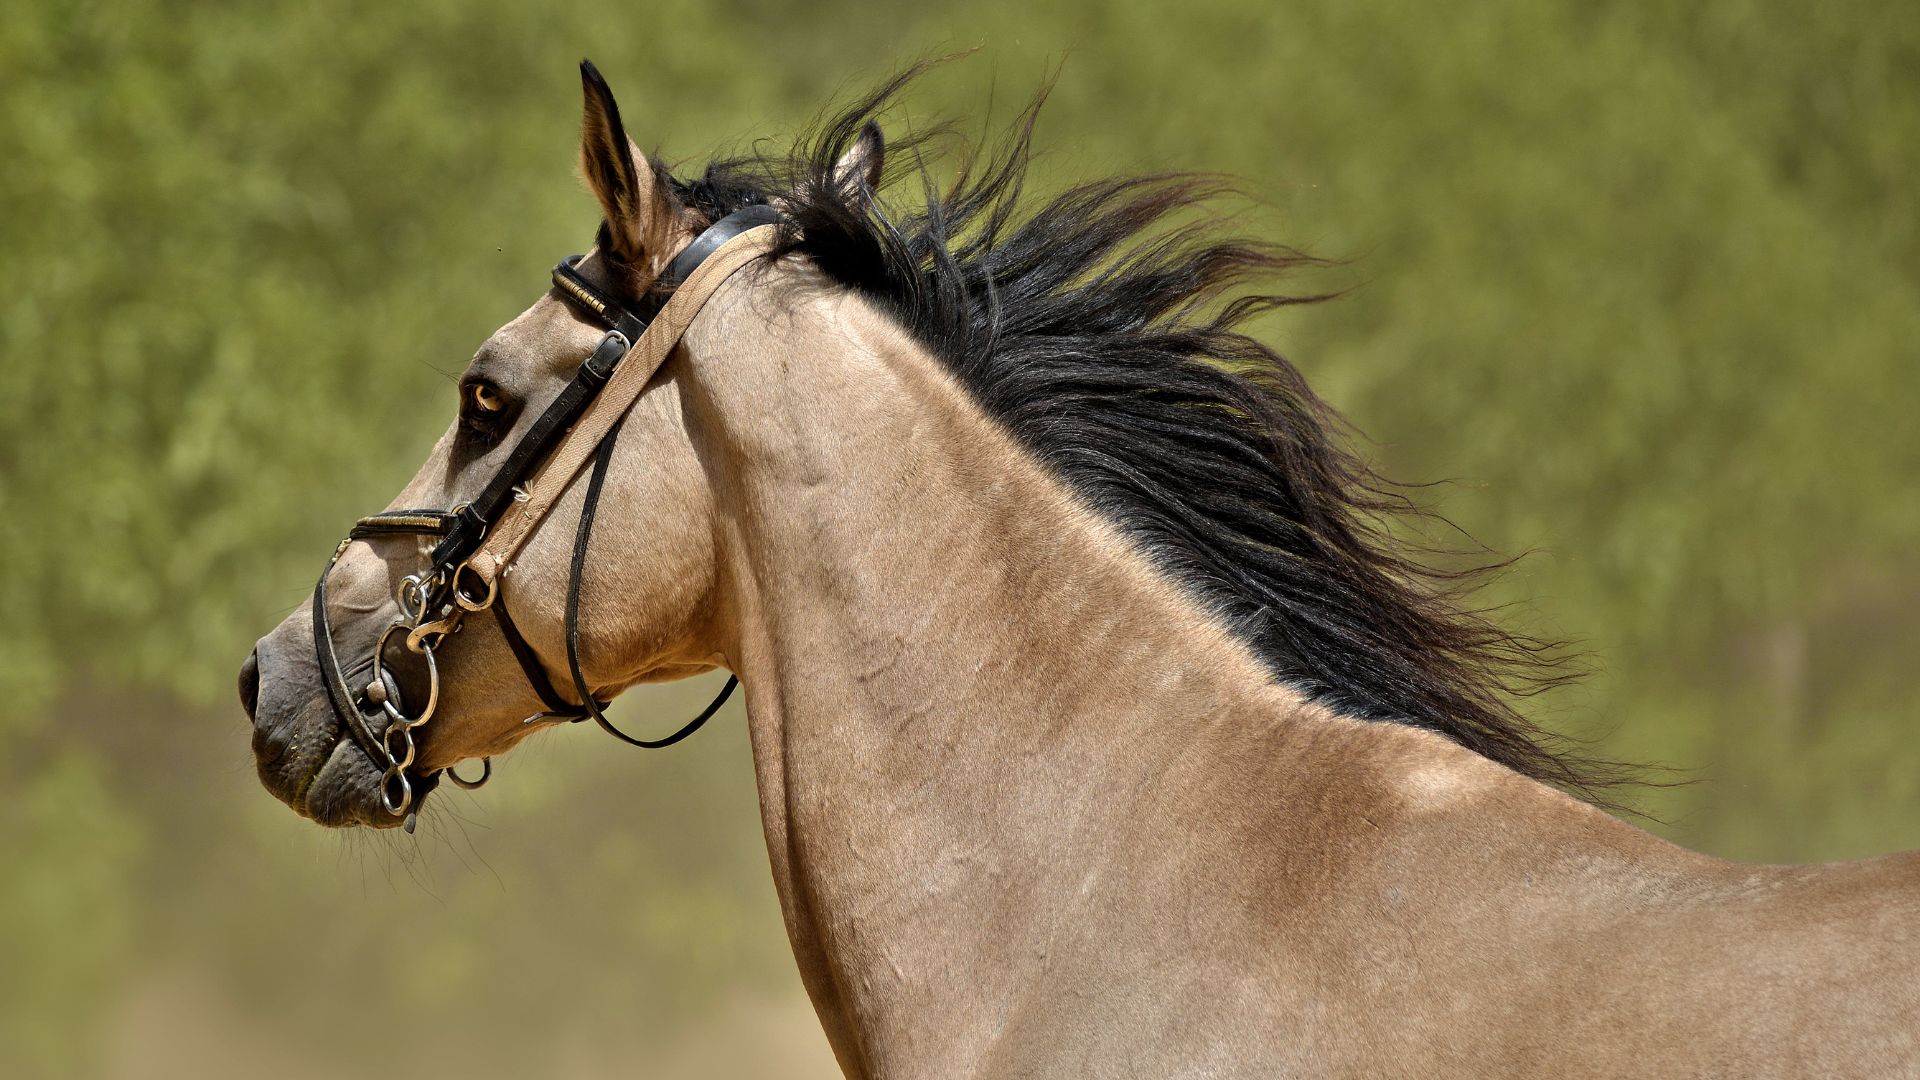 La crin del caballo: para qué sirve y cónsejos para cuidarlo